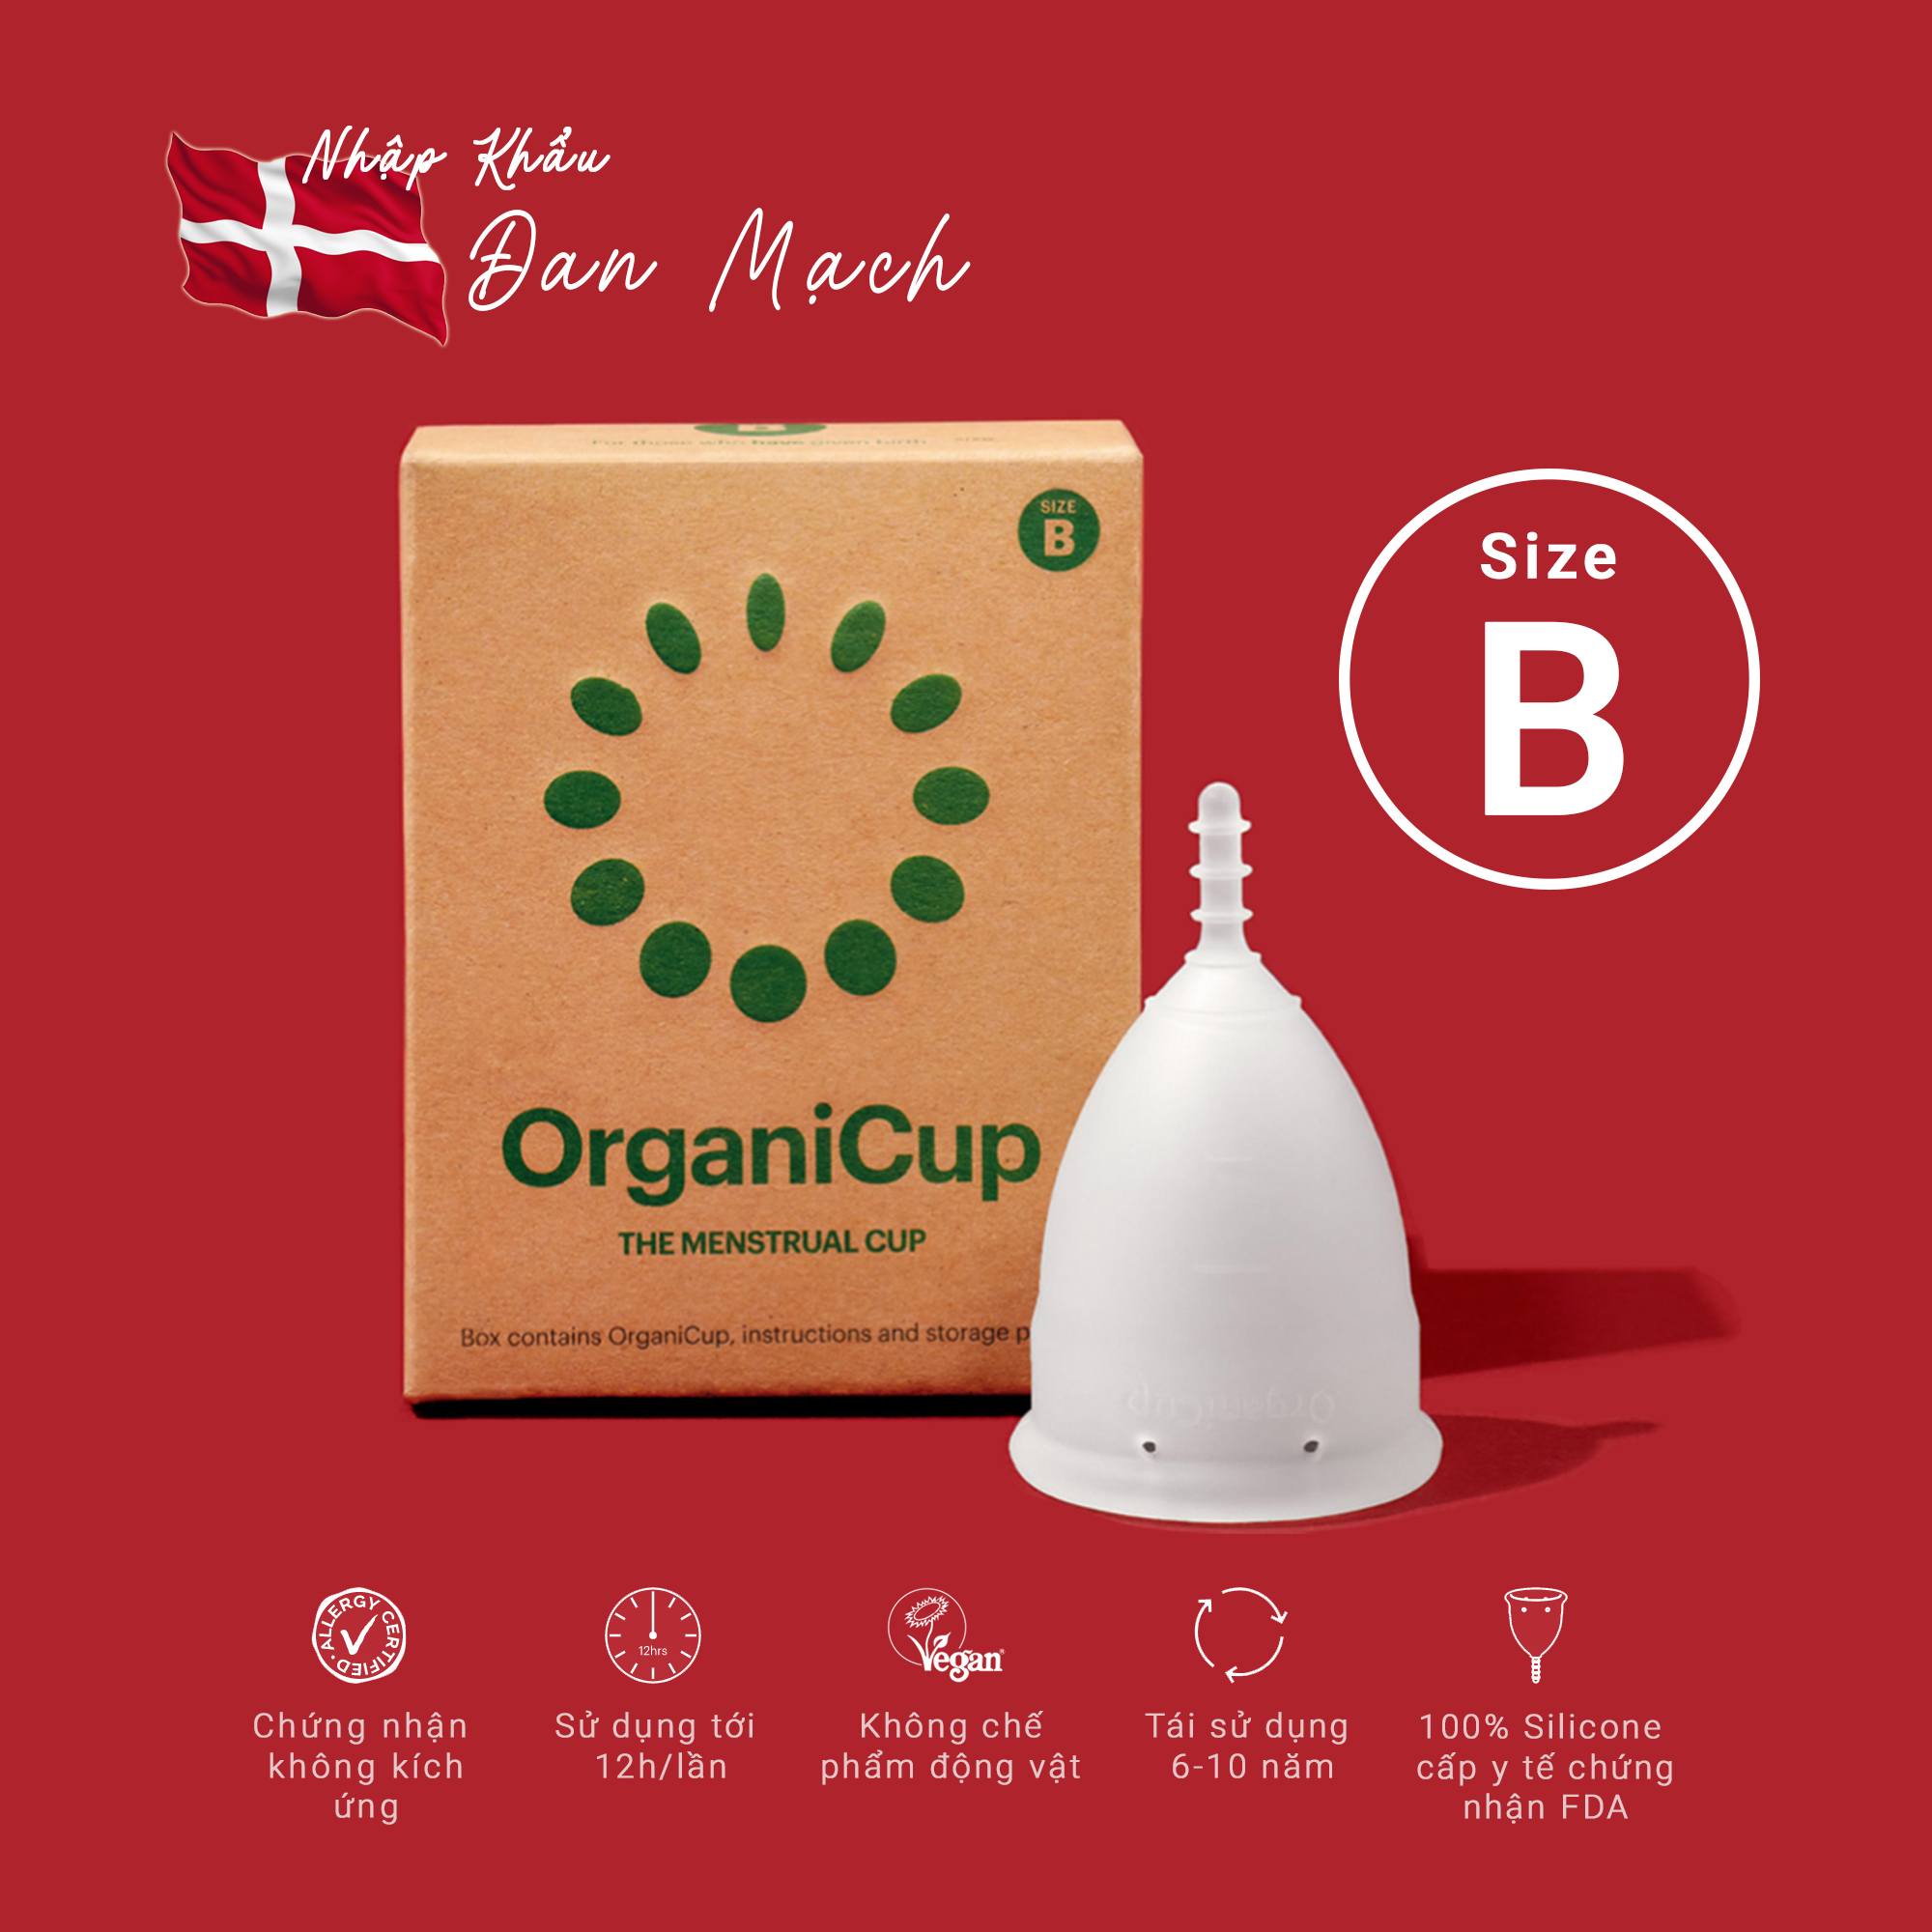 Cốc nguyệt san Organicup - Size B - NHẬP KHẨU ĐAN MẠCH - 100% silicone cấp Y tế - Chứng nhận FDA, Allergy, Vegan - không chất tạo màu, tạo mùi.